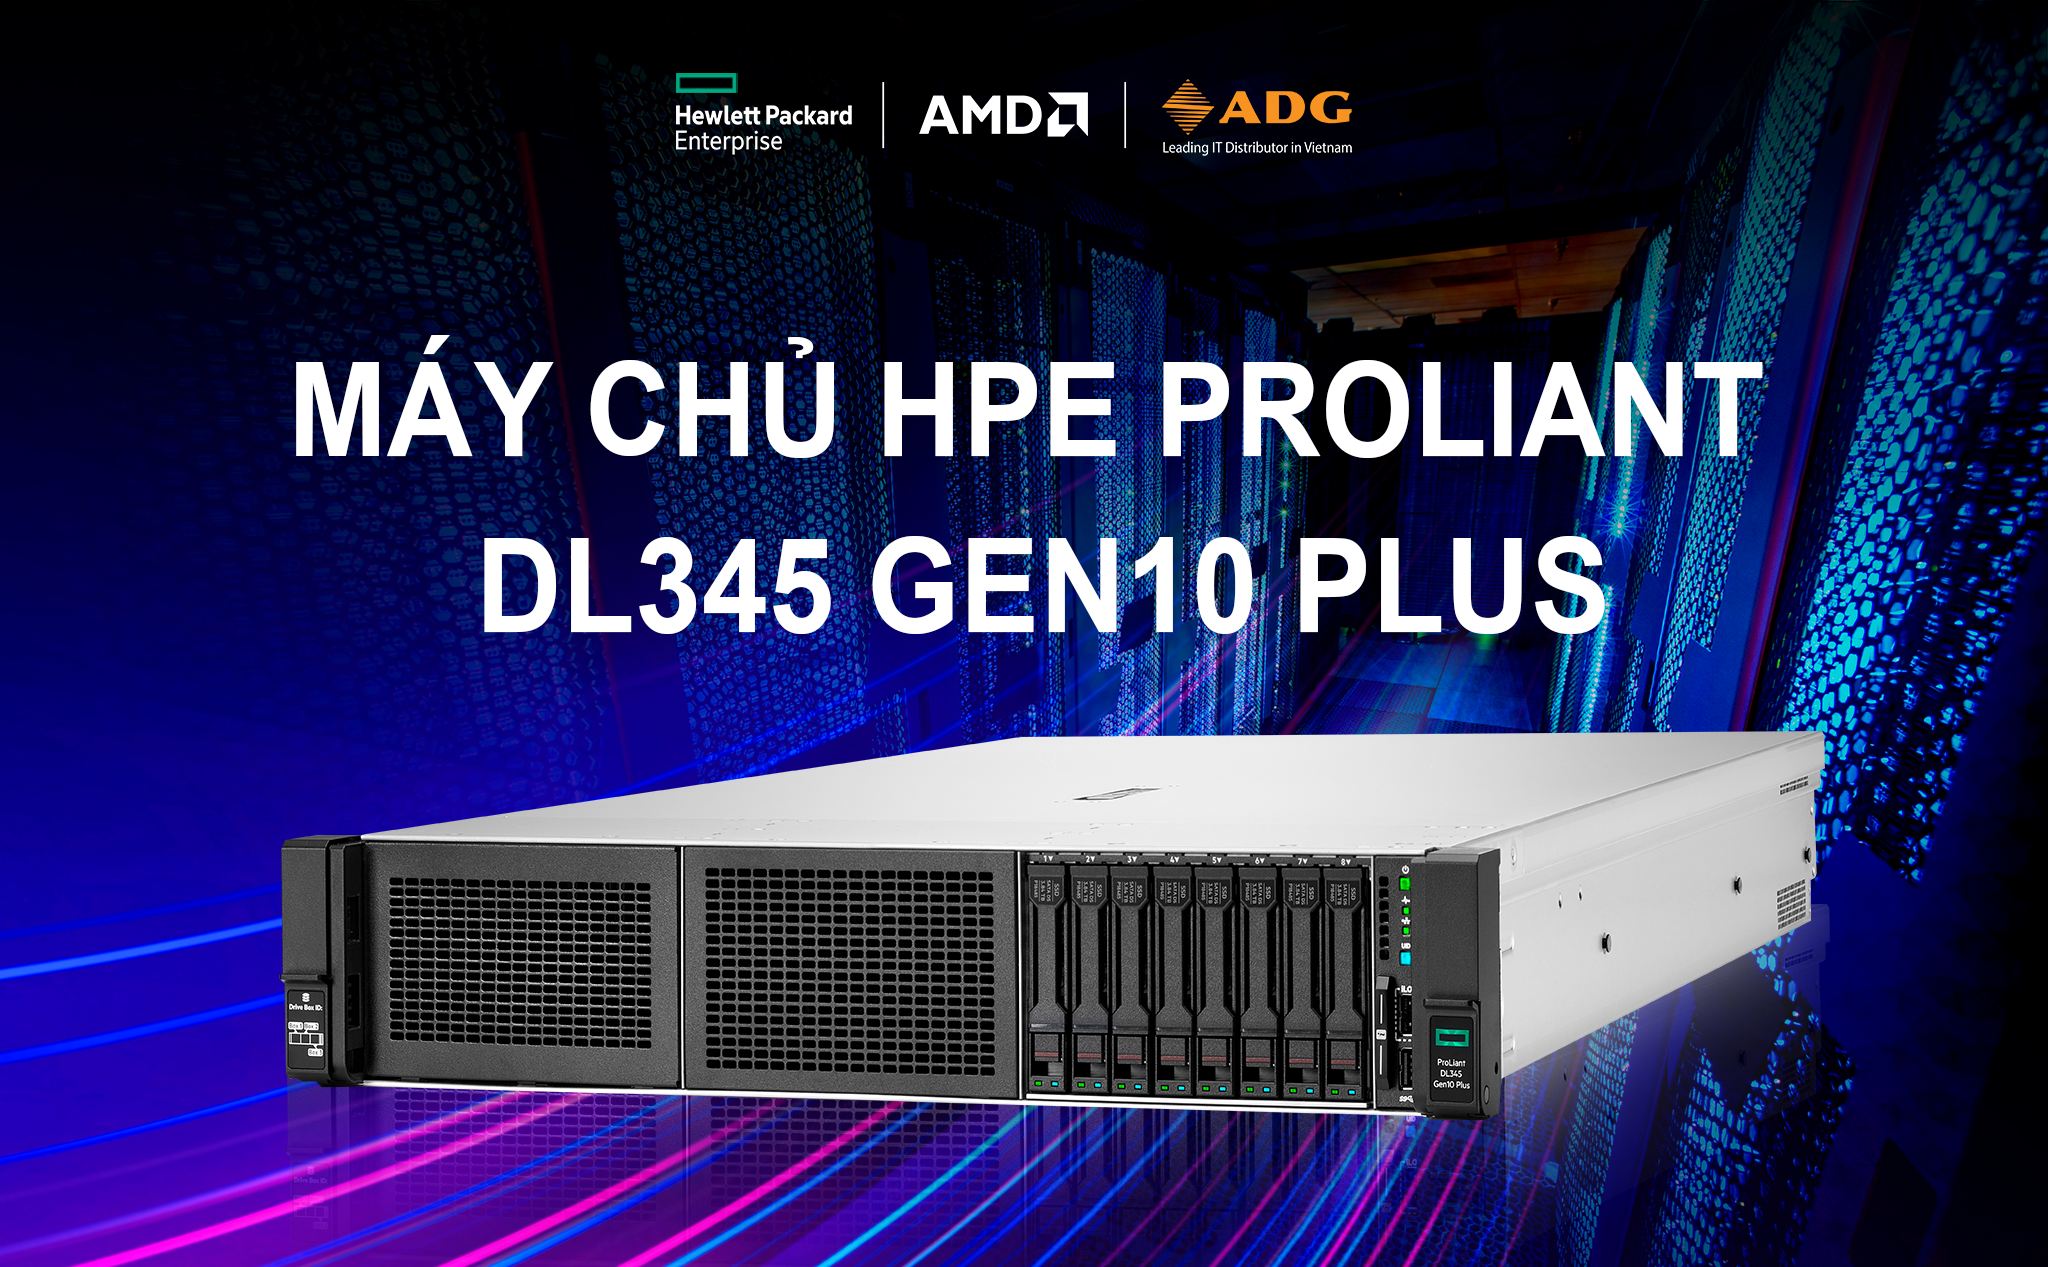 [QC] Máy chủ HPE ProLiant DL345 Gen10 Plus: Hiệu năng cao và bảo mật toàn diện